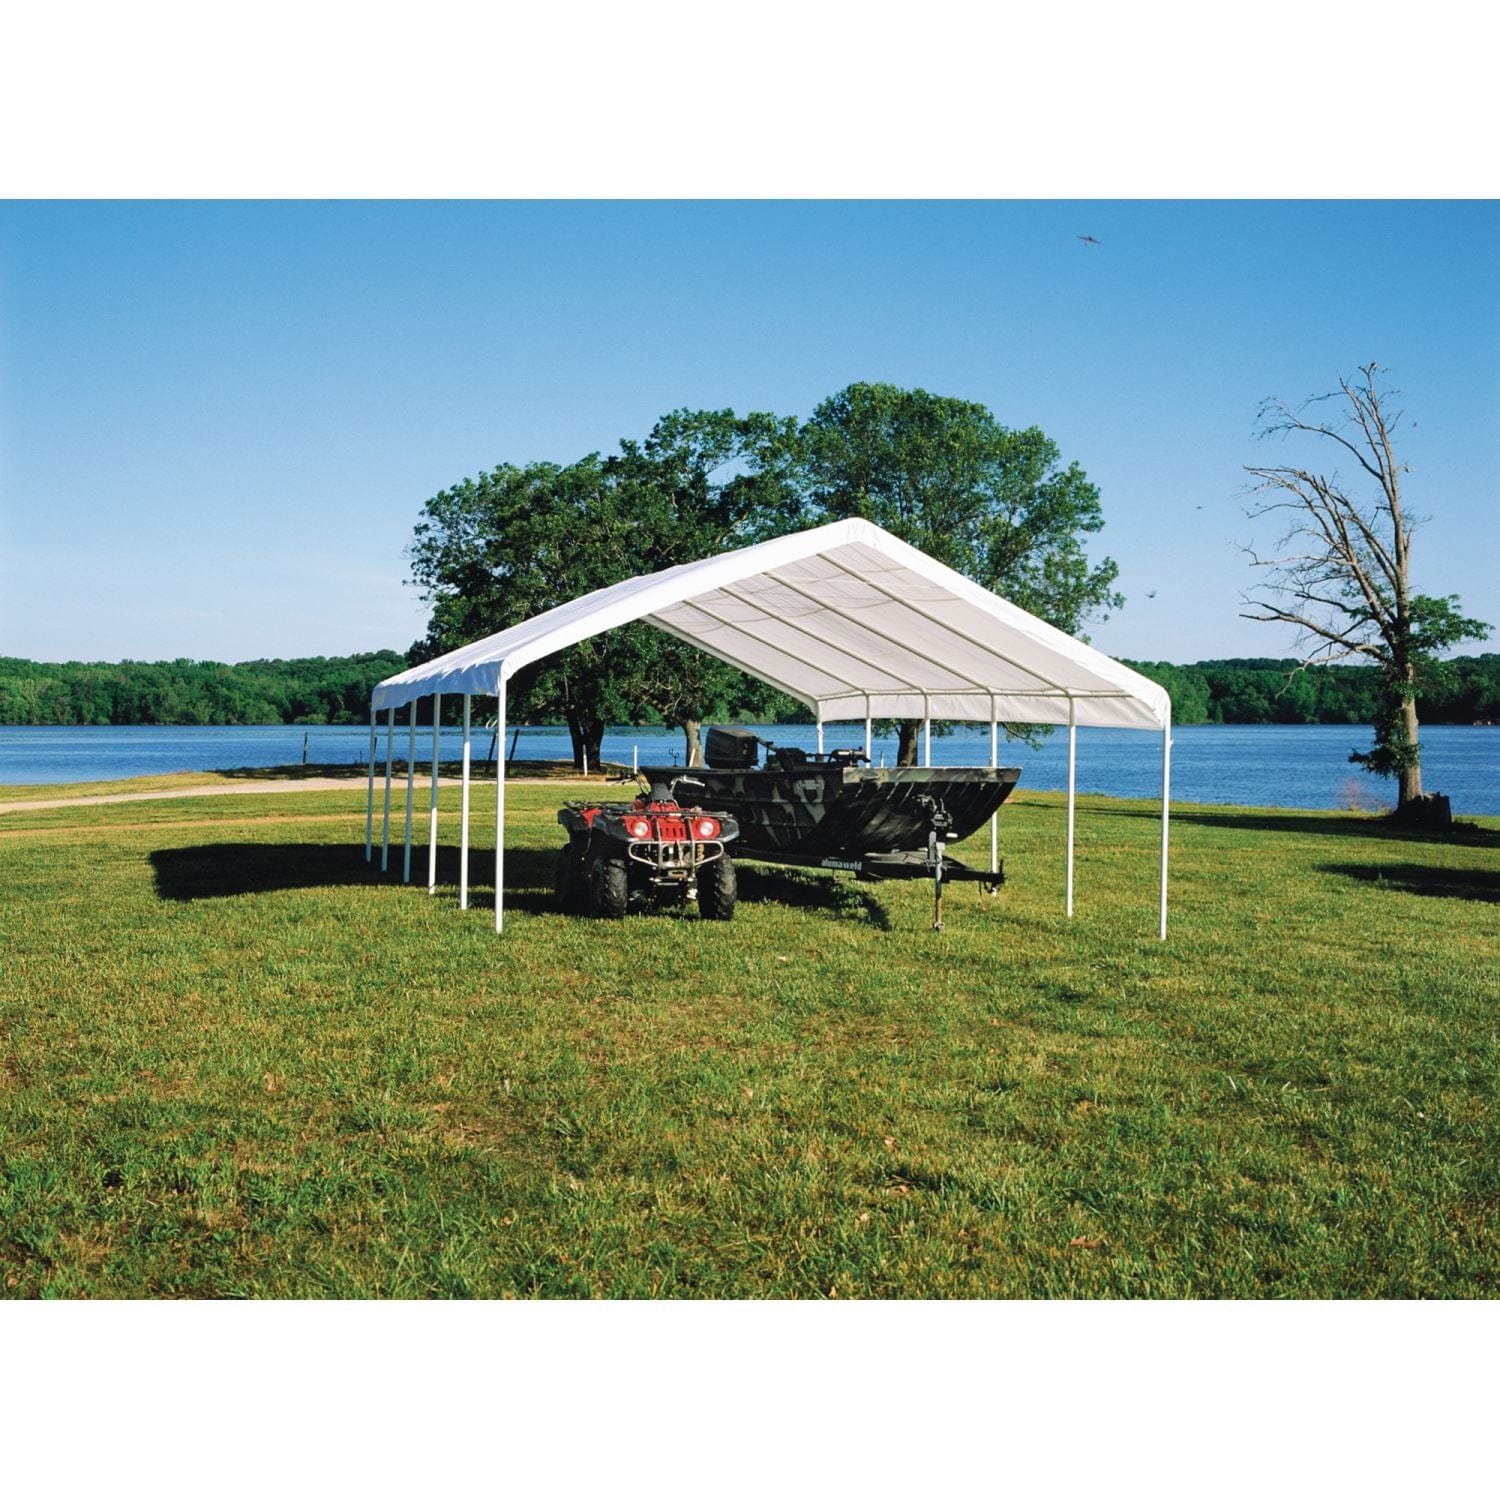 ShelterLogic Canopies ShelterLogic | SuperMax Canopy 18 x 30 ft. White 26767